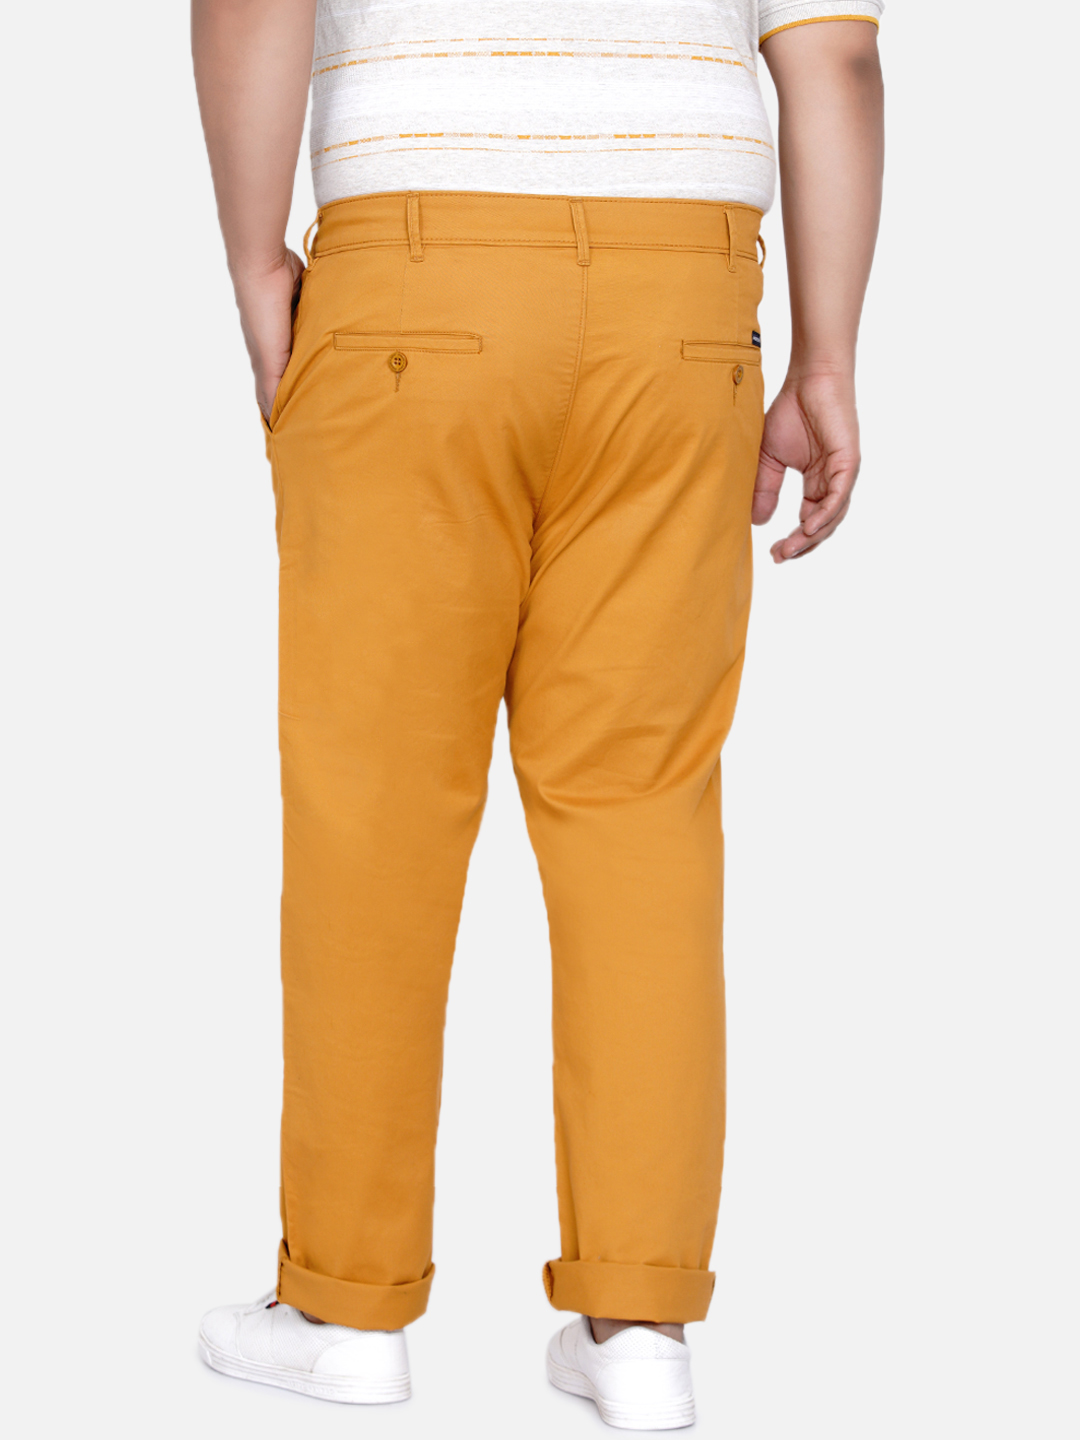 bottomwear/trousers/JPTR2161P/jptr2161p-4.jpg